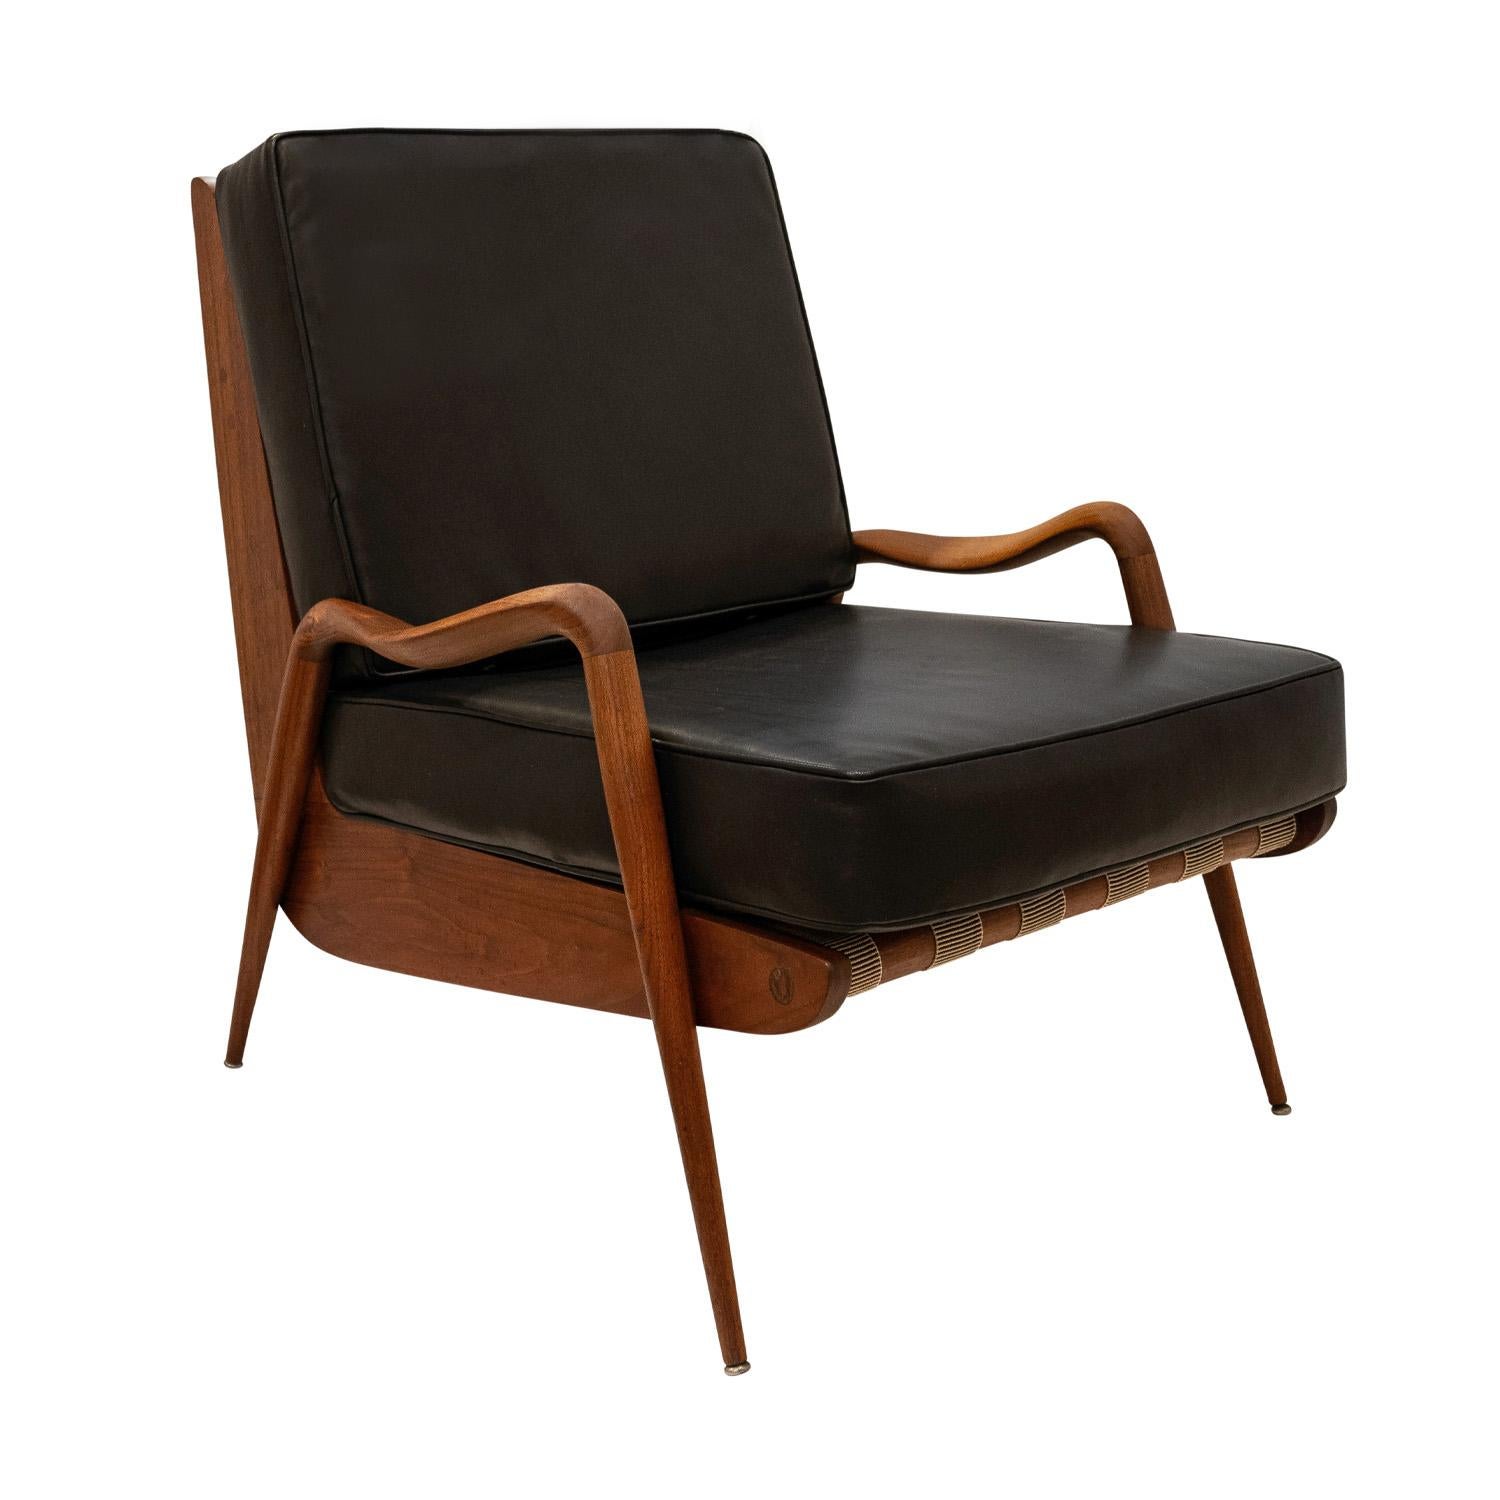 Rare chaise longue à haut dossier avec structure en noyer sculpté et coussins d'assise et de dossier en cuir noir, par Phillips Lloyds Powell, américain, début des années 1960.  L'artisanat et l'attention portée aux détails sont superbes. 